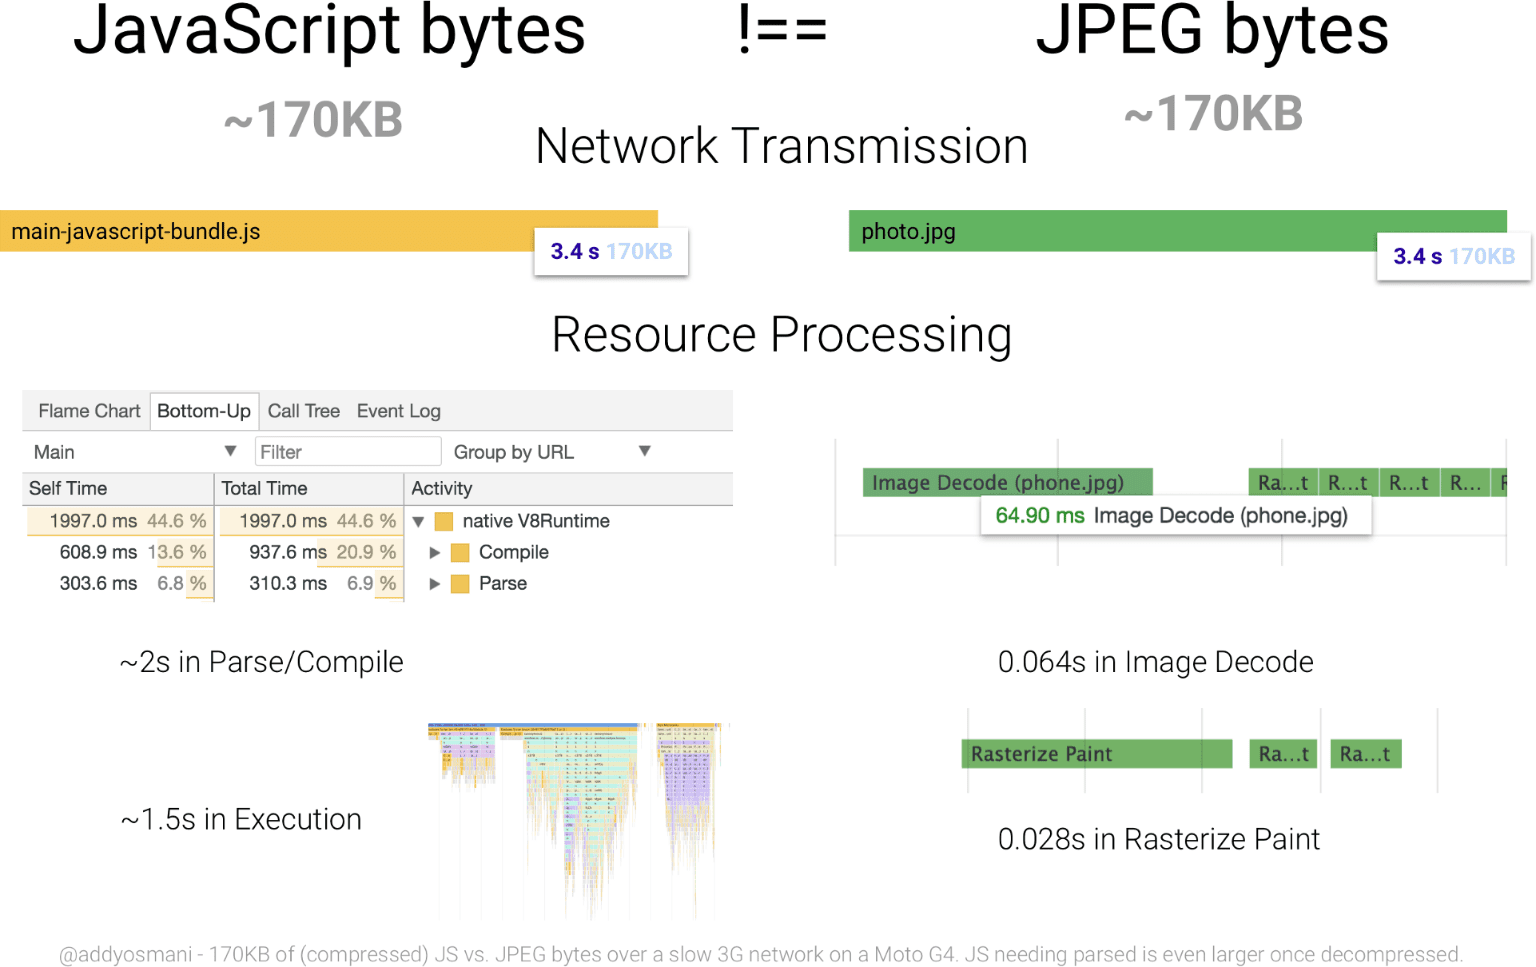 תרשים שמשווה את זמן העיבוד של 170KB ב-JavaScript לעומת תמונת JPEG בגודל מקביל. משאב ה-JavaScript דורש הרבה יותר משאבים עבור בייט מאשר ה-JPEG.